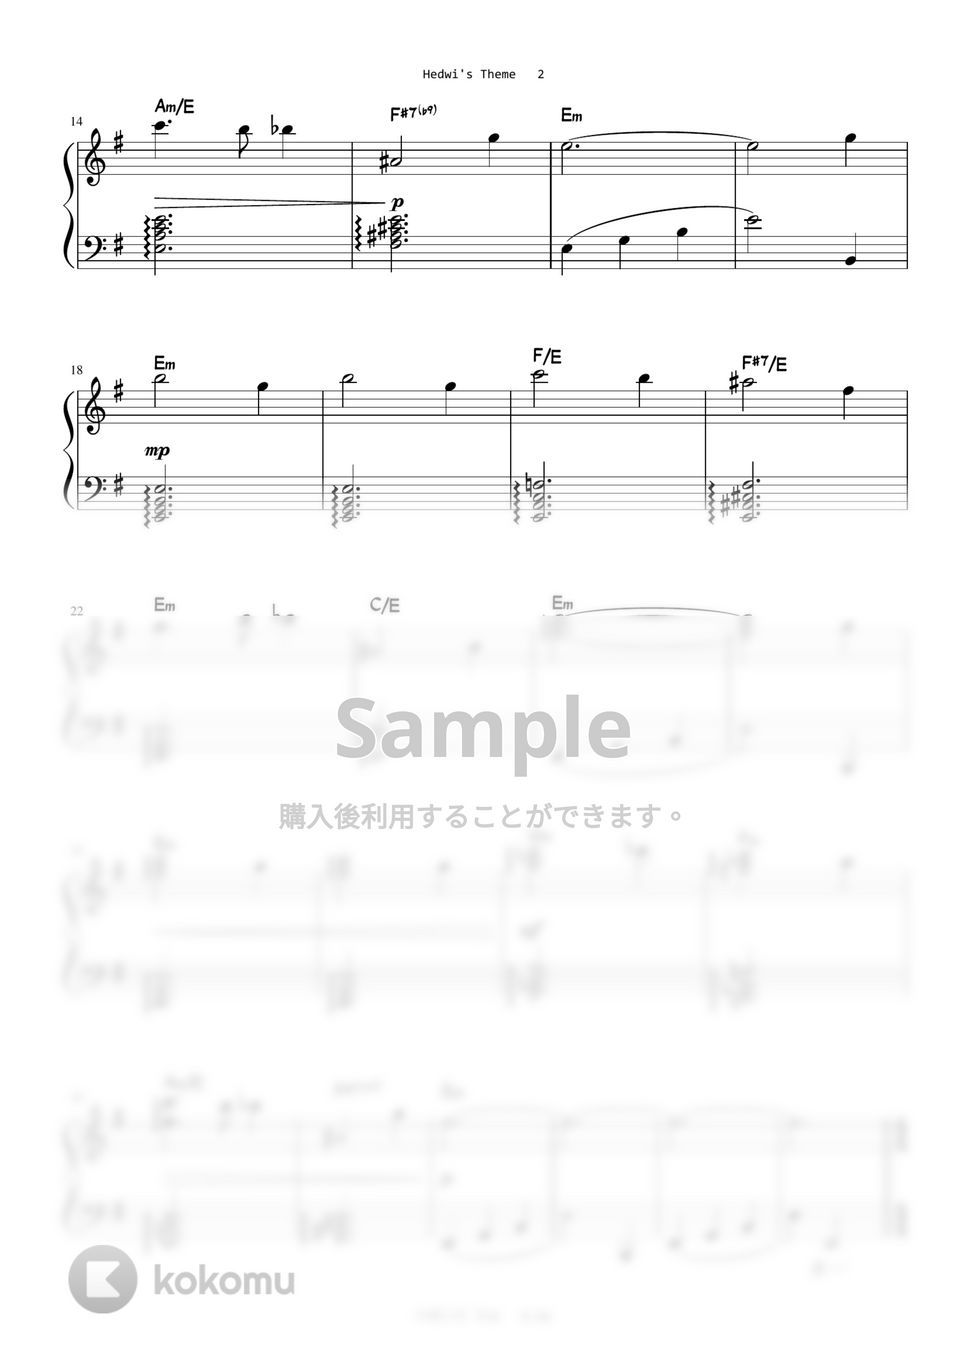 ハリーポッター - Hedwig's Theme (Level 3 -Original Key) by A.Ha